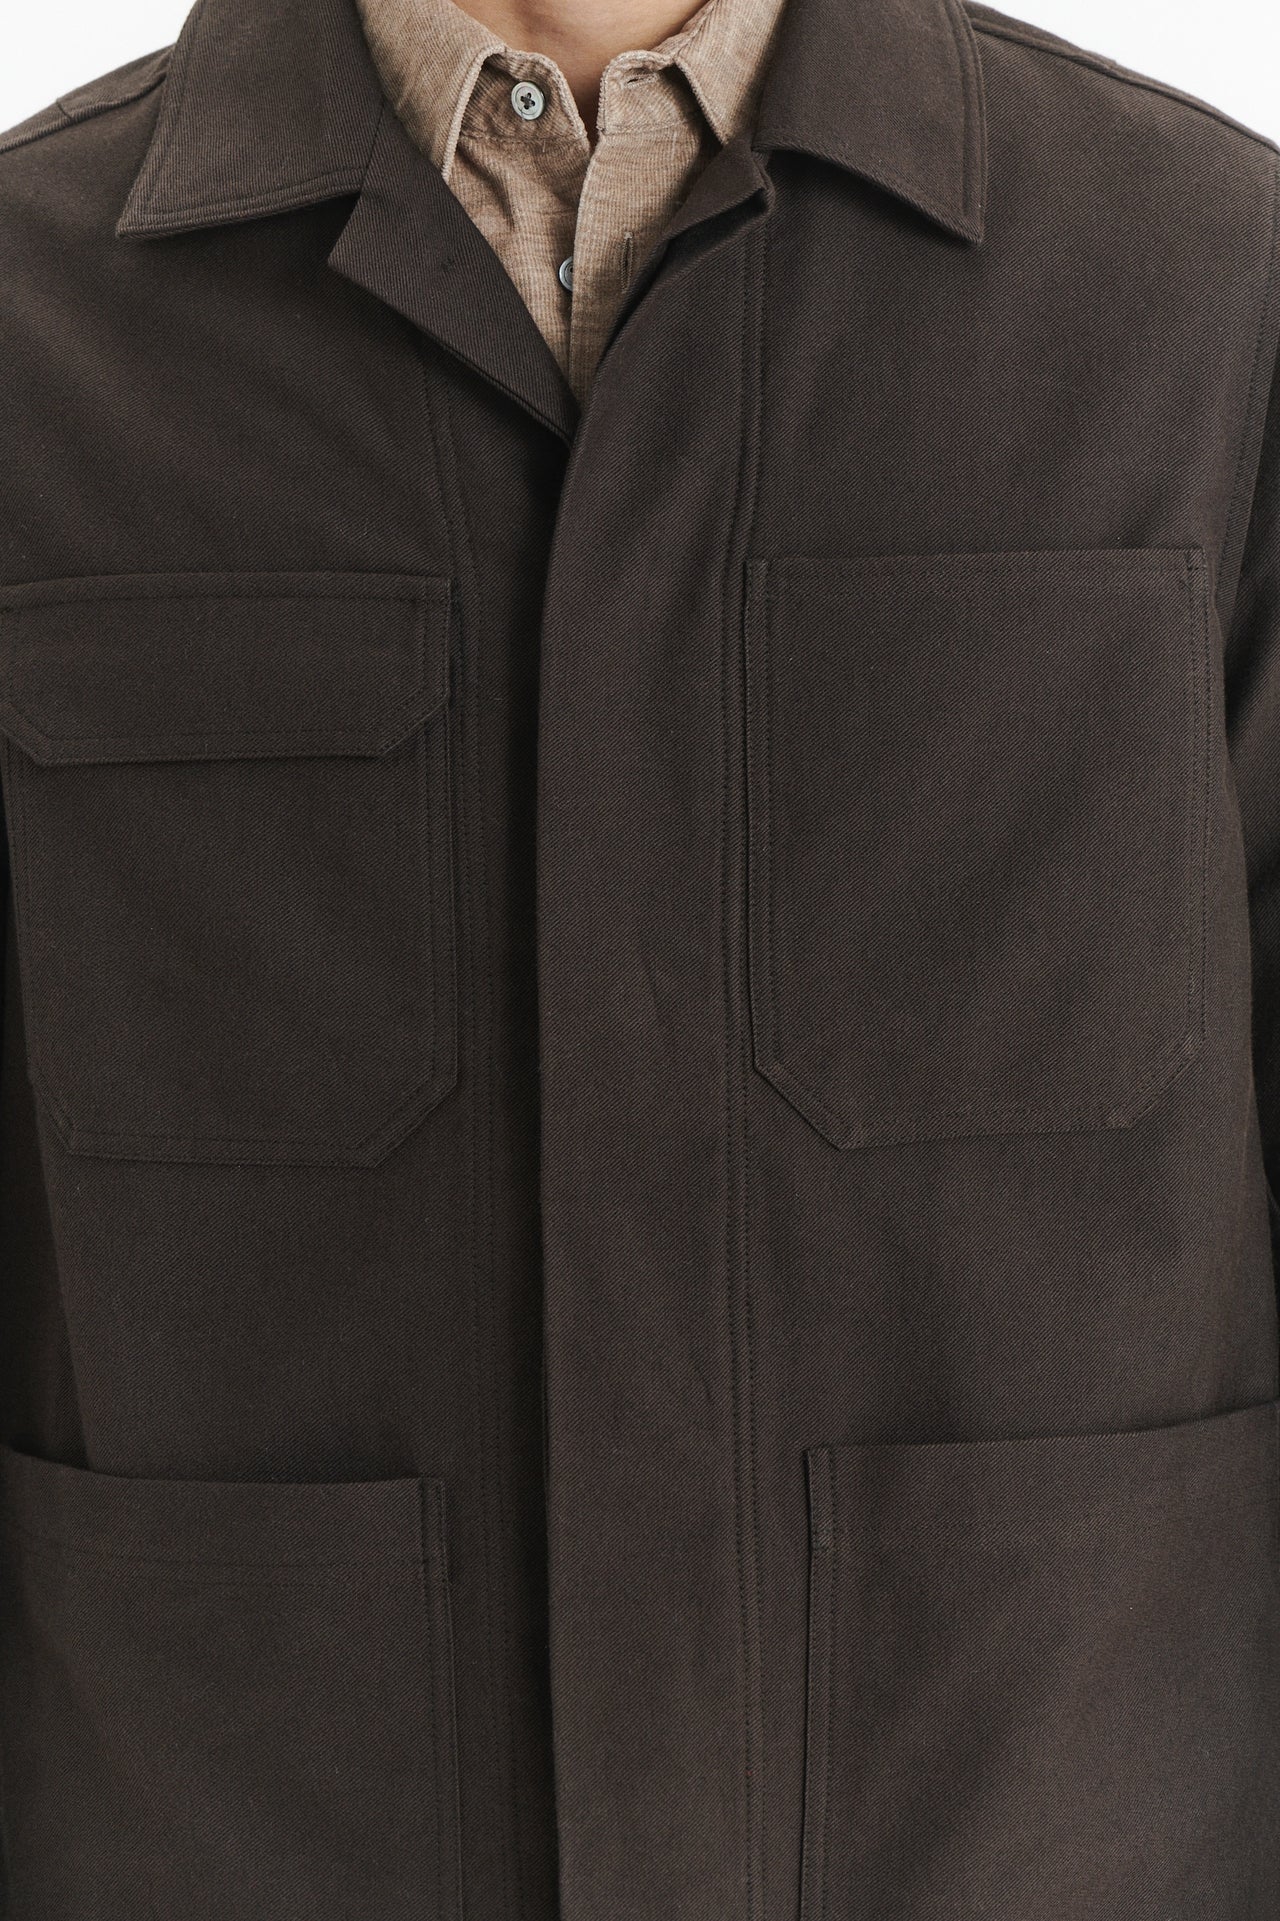 最高級ブラウンのイタリア製ウールとコットンを使用したワークウェア ジャケット